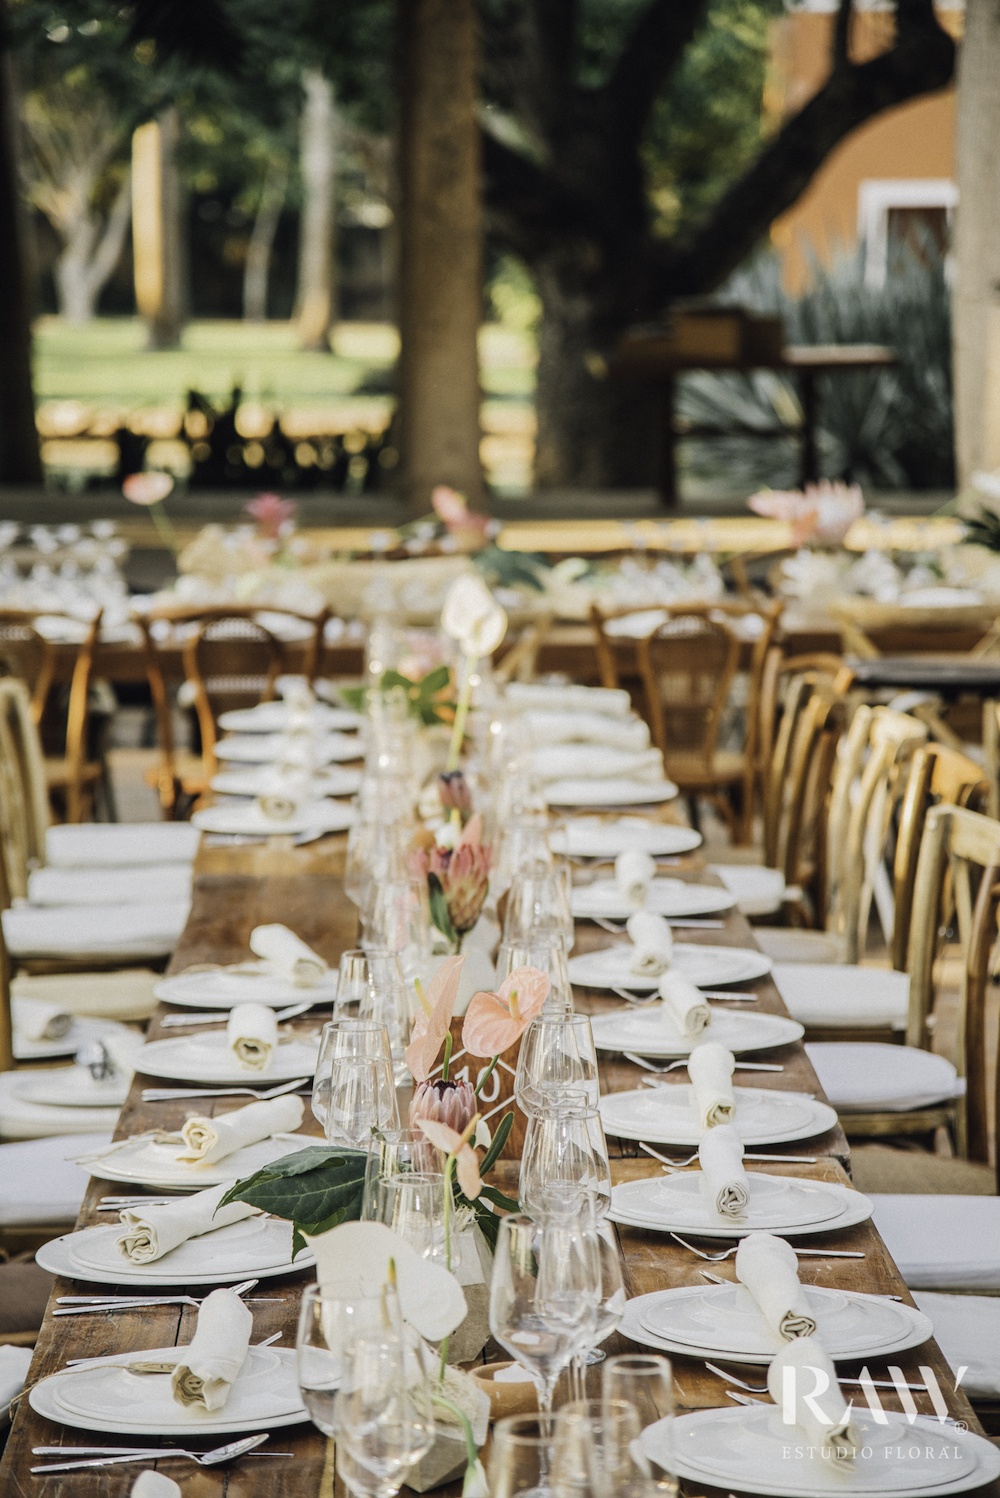 Floral bruiloft met anthurium snijbloemen op tafel